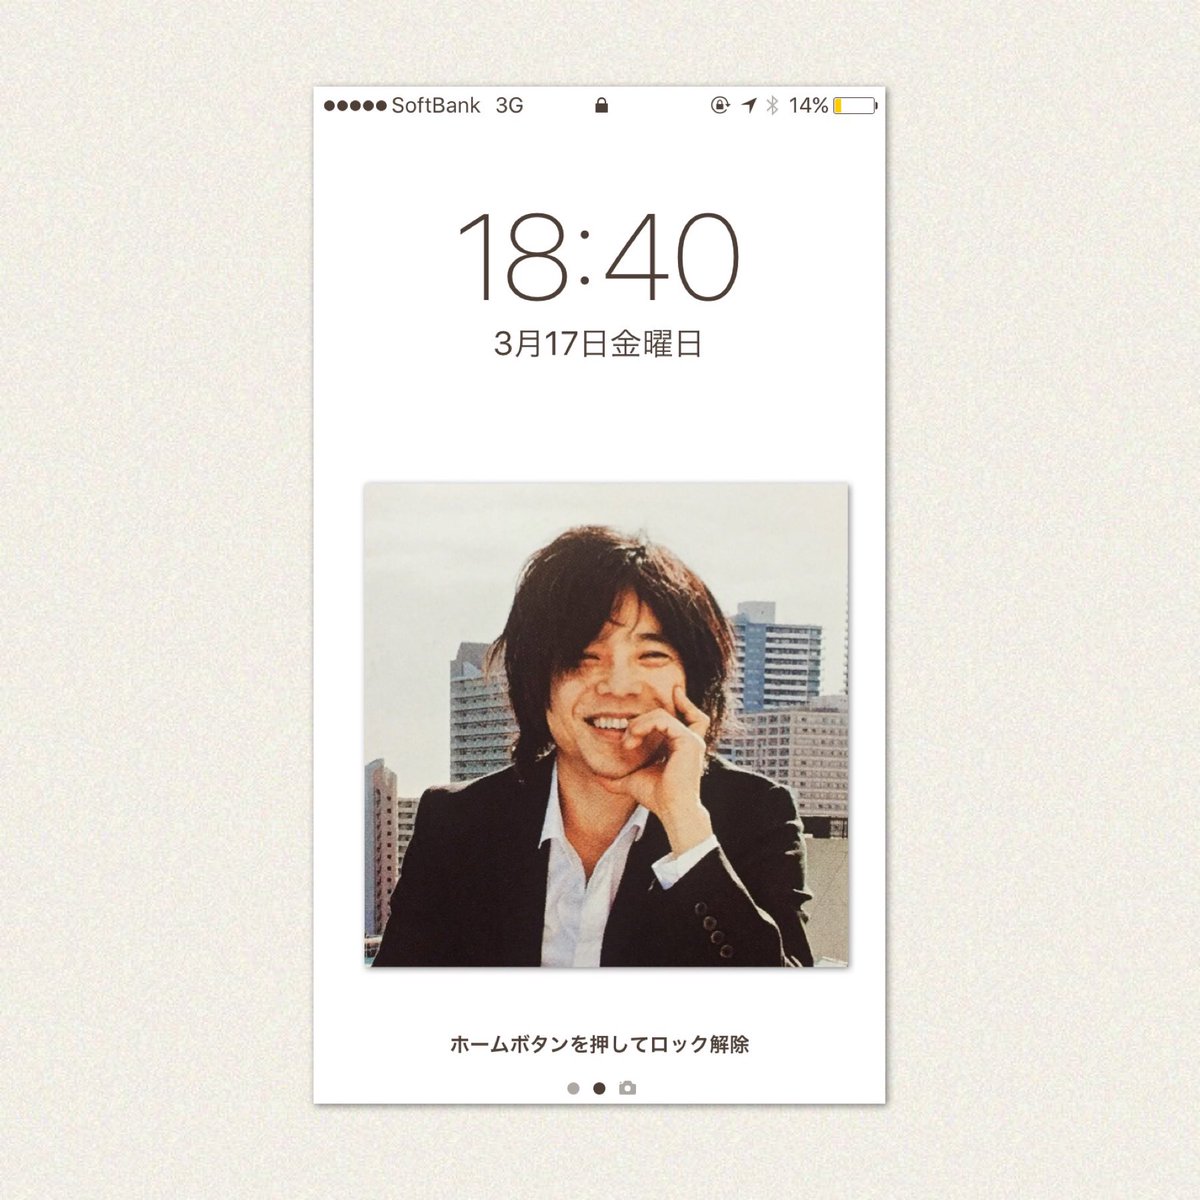 Sato בטוויטר 私の今の Iphone 壁紙はこの宮本さんですっ 宮本浩次 エレカシの宮本さんに会いたい